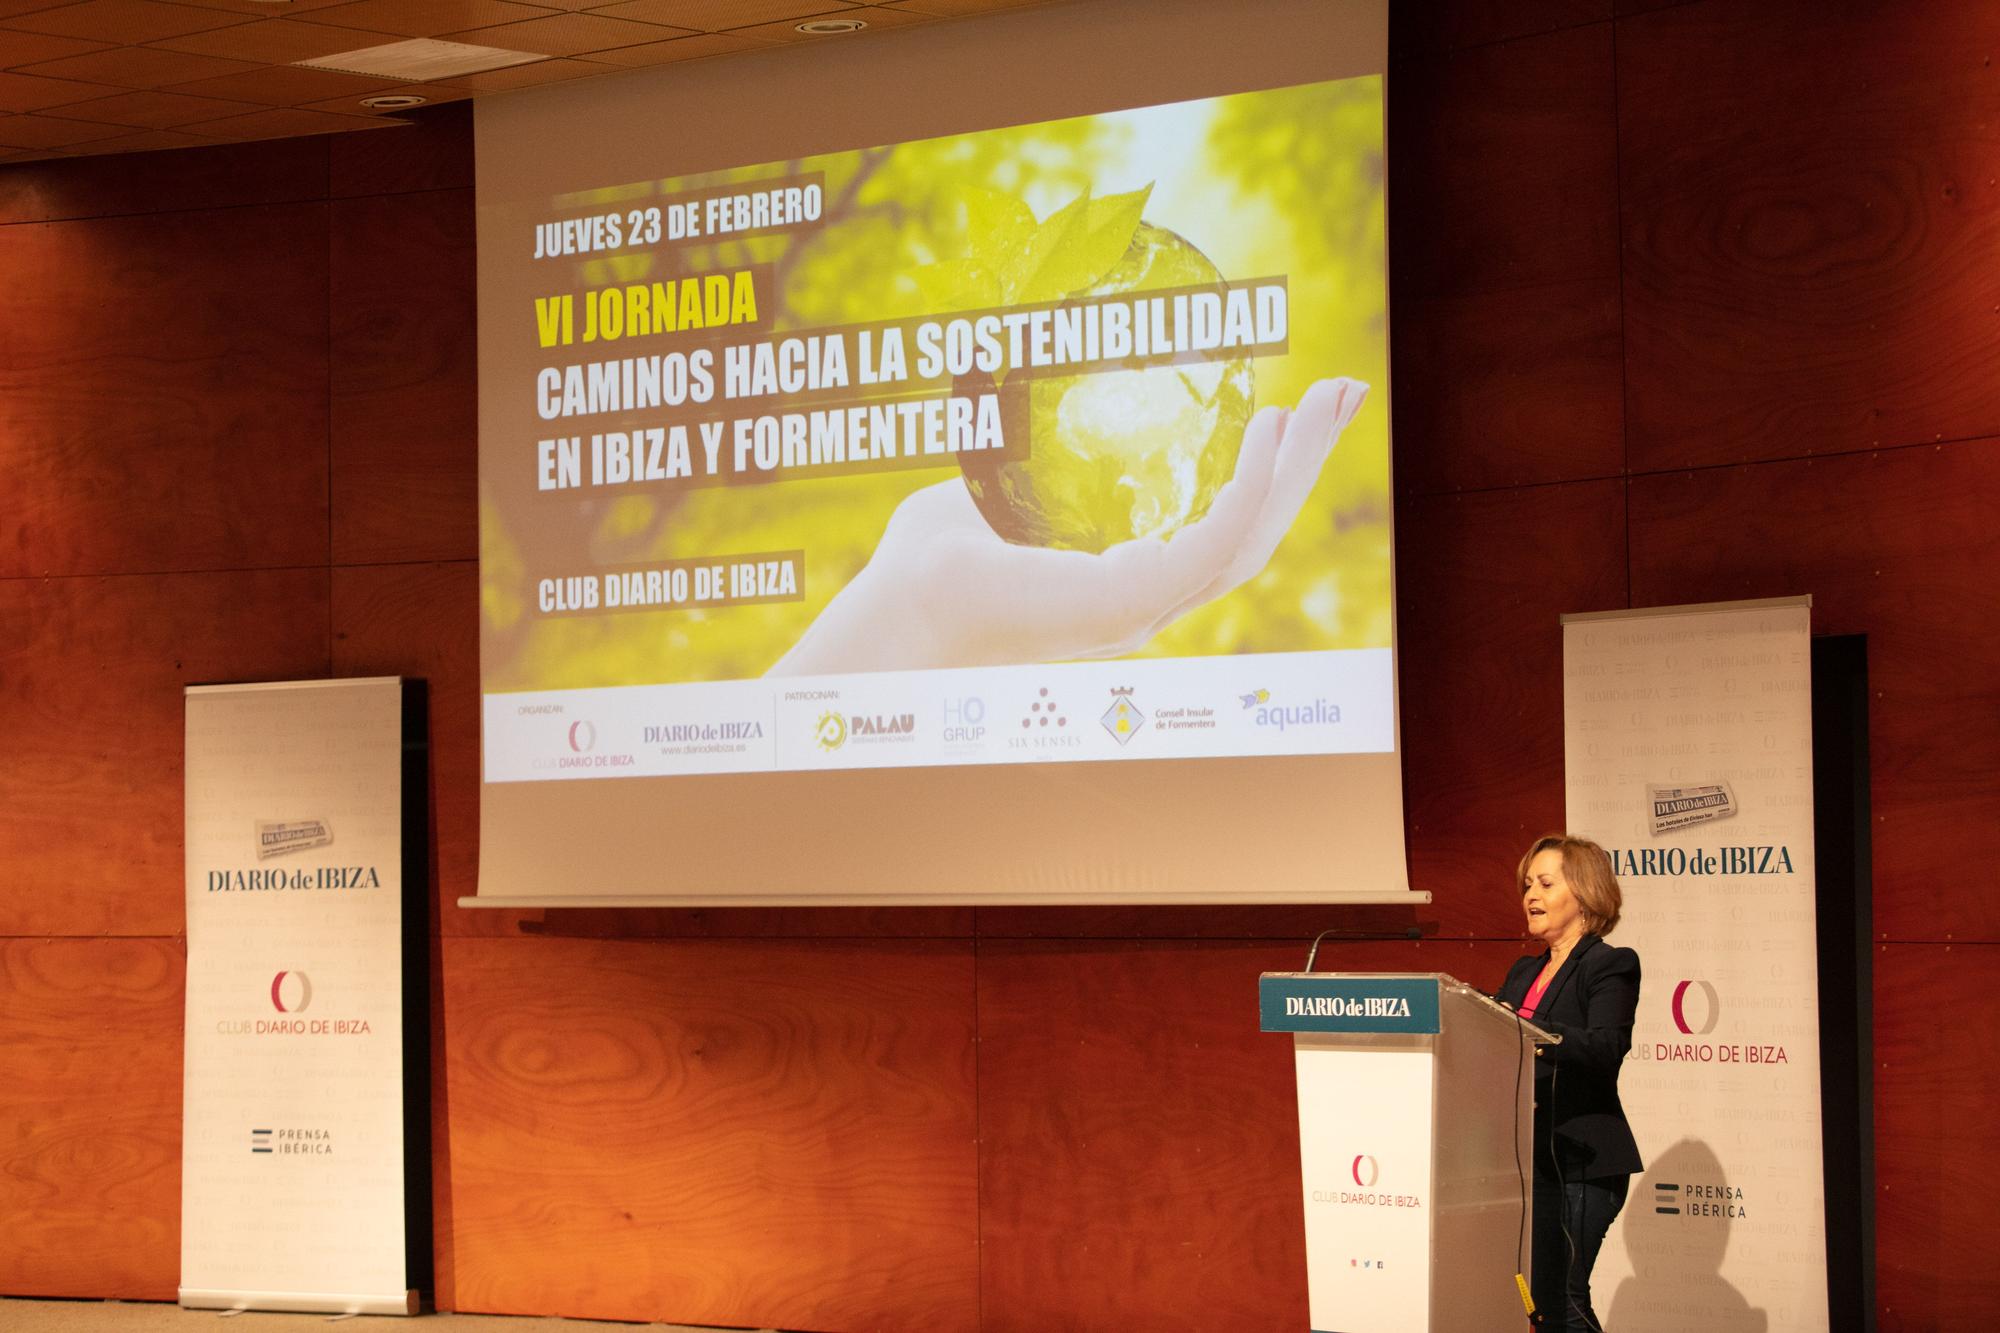 Susana Asenjo, coordinadora del Club Diario, en la presentación de laVI Jornada Caminos hacia la sostenibilidad en Ibiza y Formentera.jpg